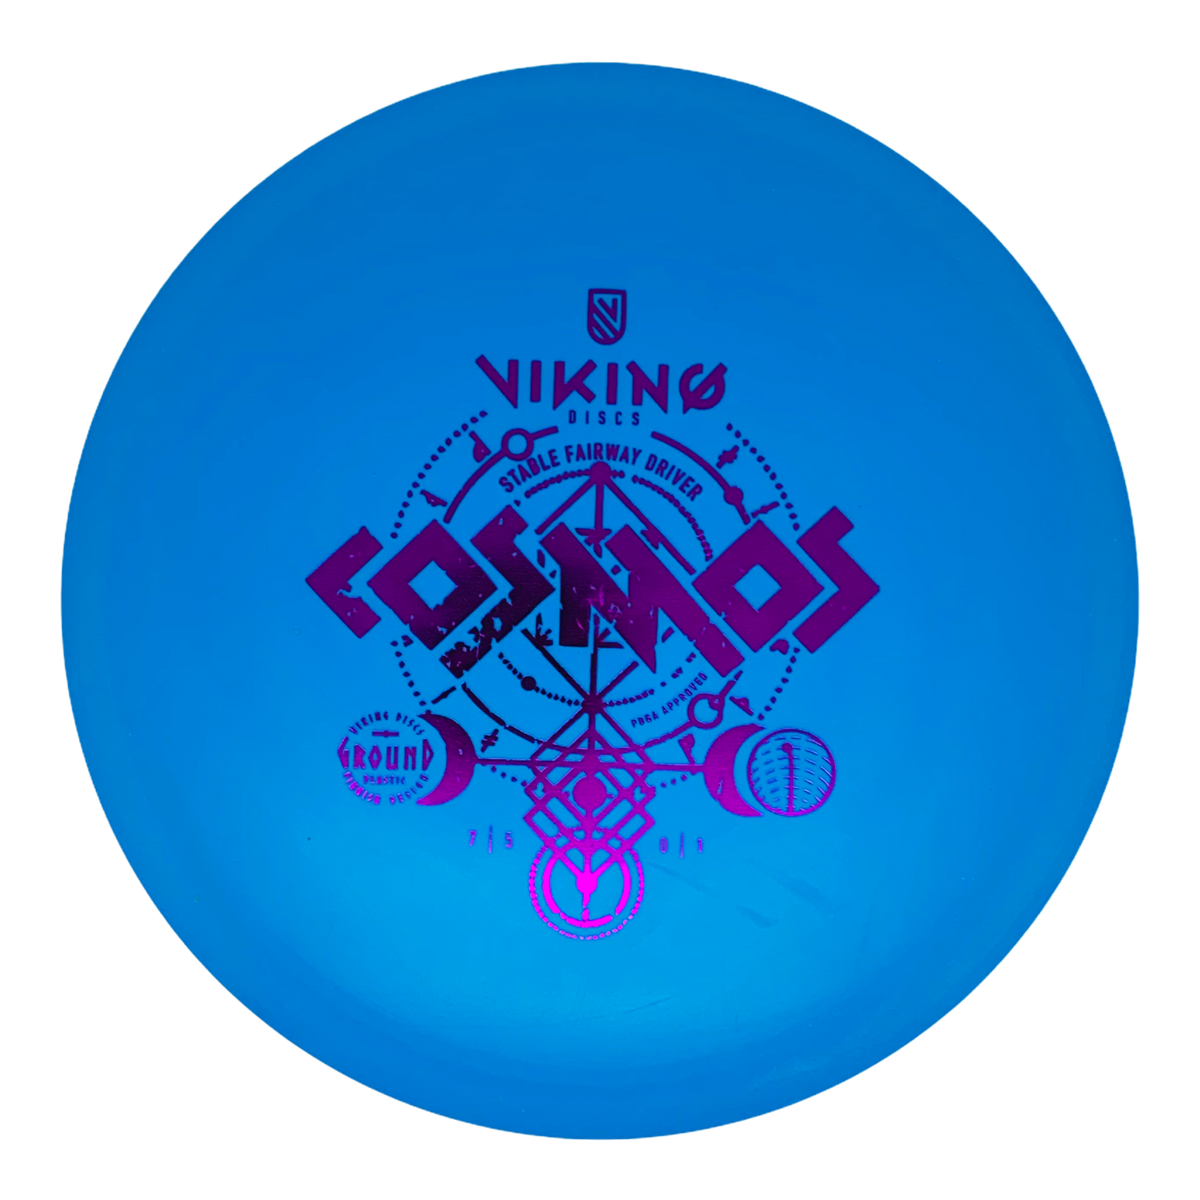 Viking Discs Ground Plastic Cosmos